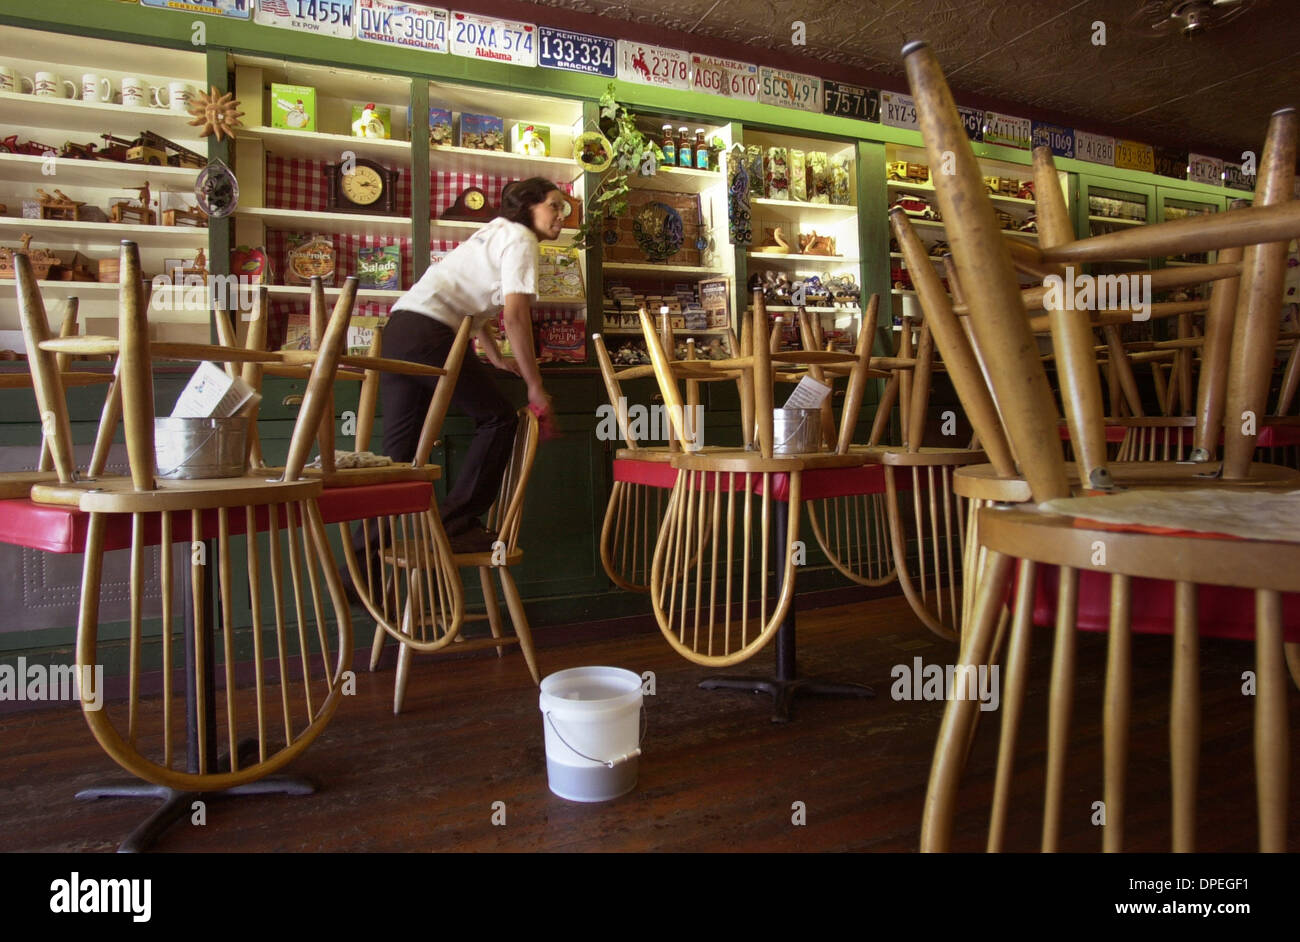 (Veröffentlichten 09.11.2003, h-1) SAN DIEGO COUNTY FEUERSTÜRME | CEDAR FIRE: AFTERMATH - Graciela (Cq) Ibarra, ein Arbeiter bei der Bergmann Diner auf der Main Street in Julian, reinigt und bereitet das Café Mittwoch 4. November 2003, so dass es am nächsten Tag öffnen konnte. UT/DON KOHLBAUER Stockfoto